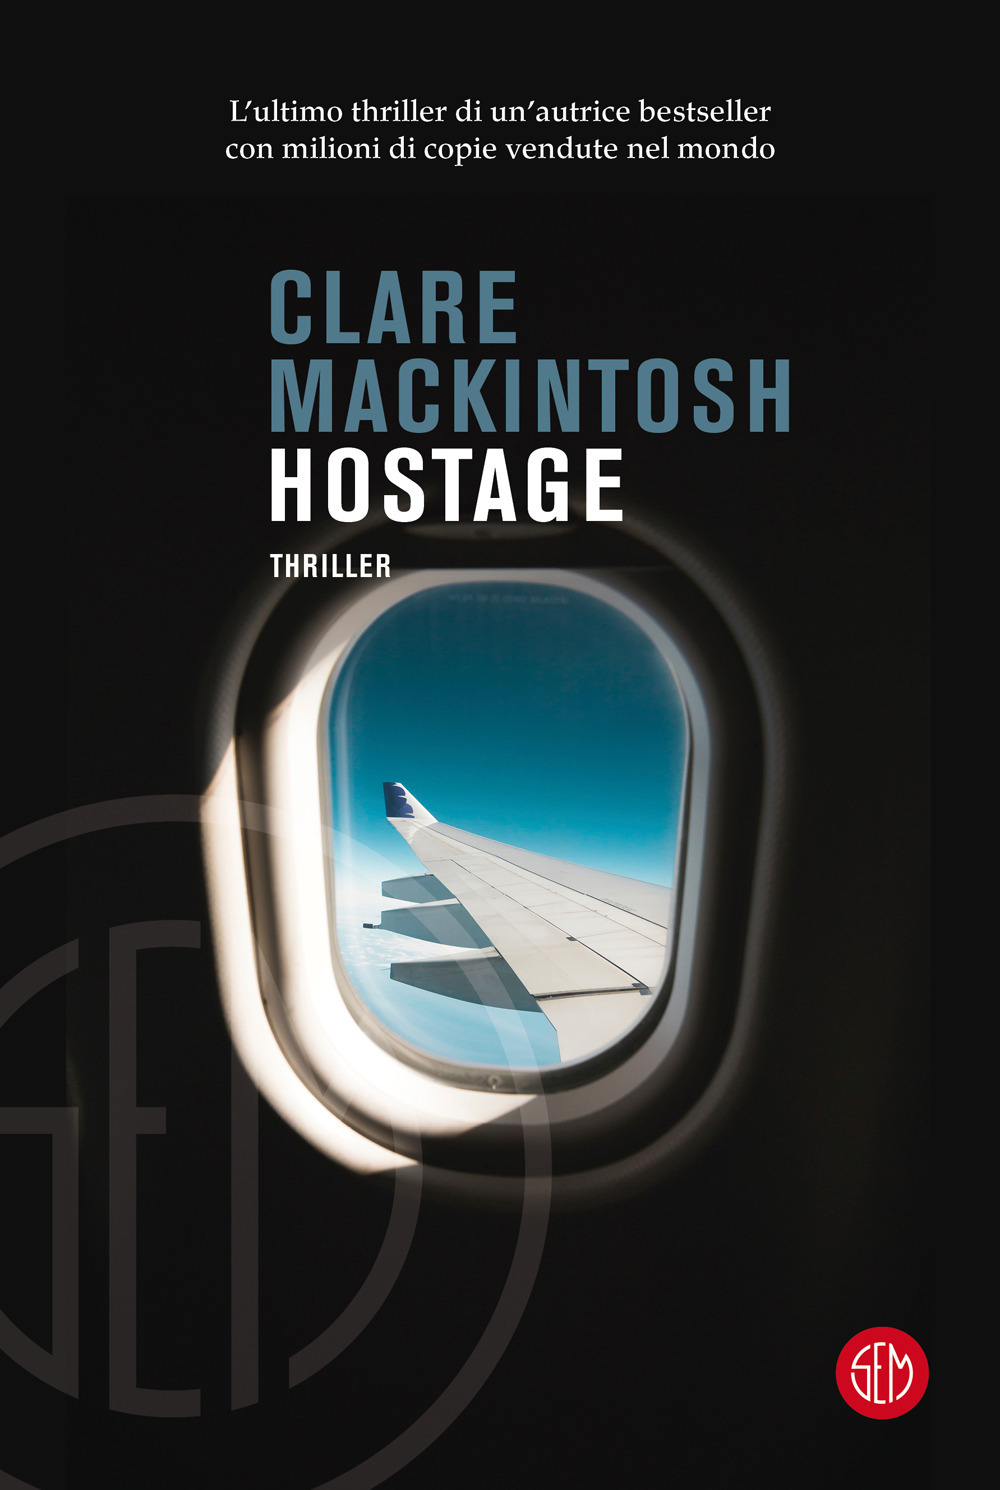 Libri Clare MacKintosh - Hostage NUOVO SIGILLATO, EDIZIONE DEL 03/02/2022 SUBITO DISPONIBILE